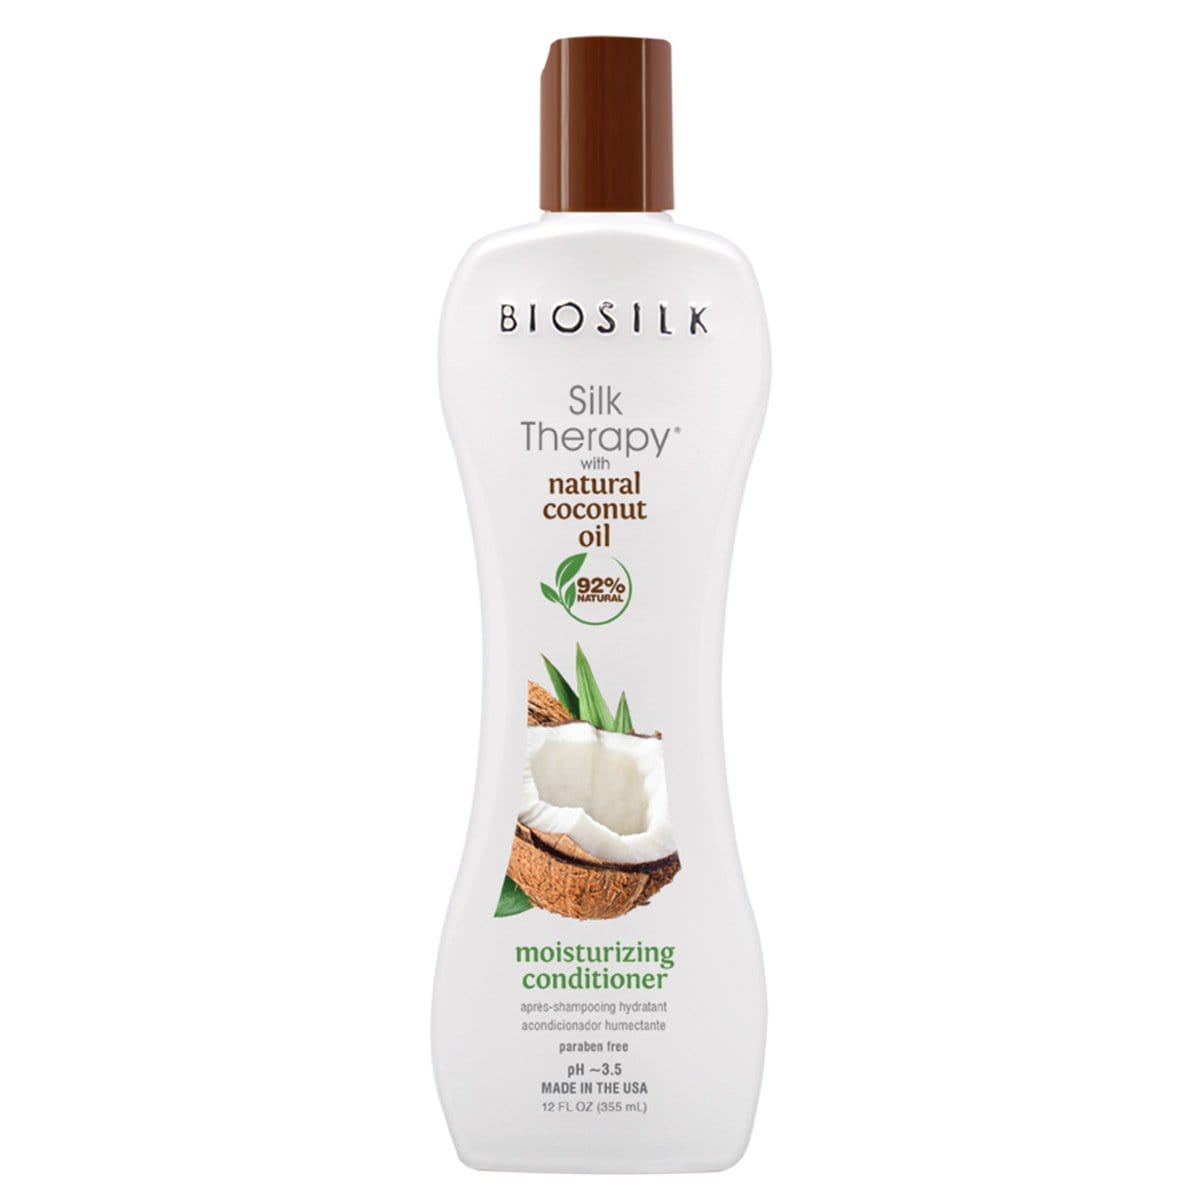 Biosilk - Silk Therapy - "Natural coconut oil" natural conditioner - 355 ml - Biosilk - Ethni Beauty Market